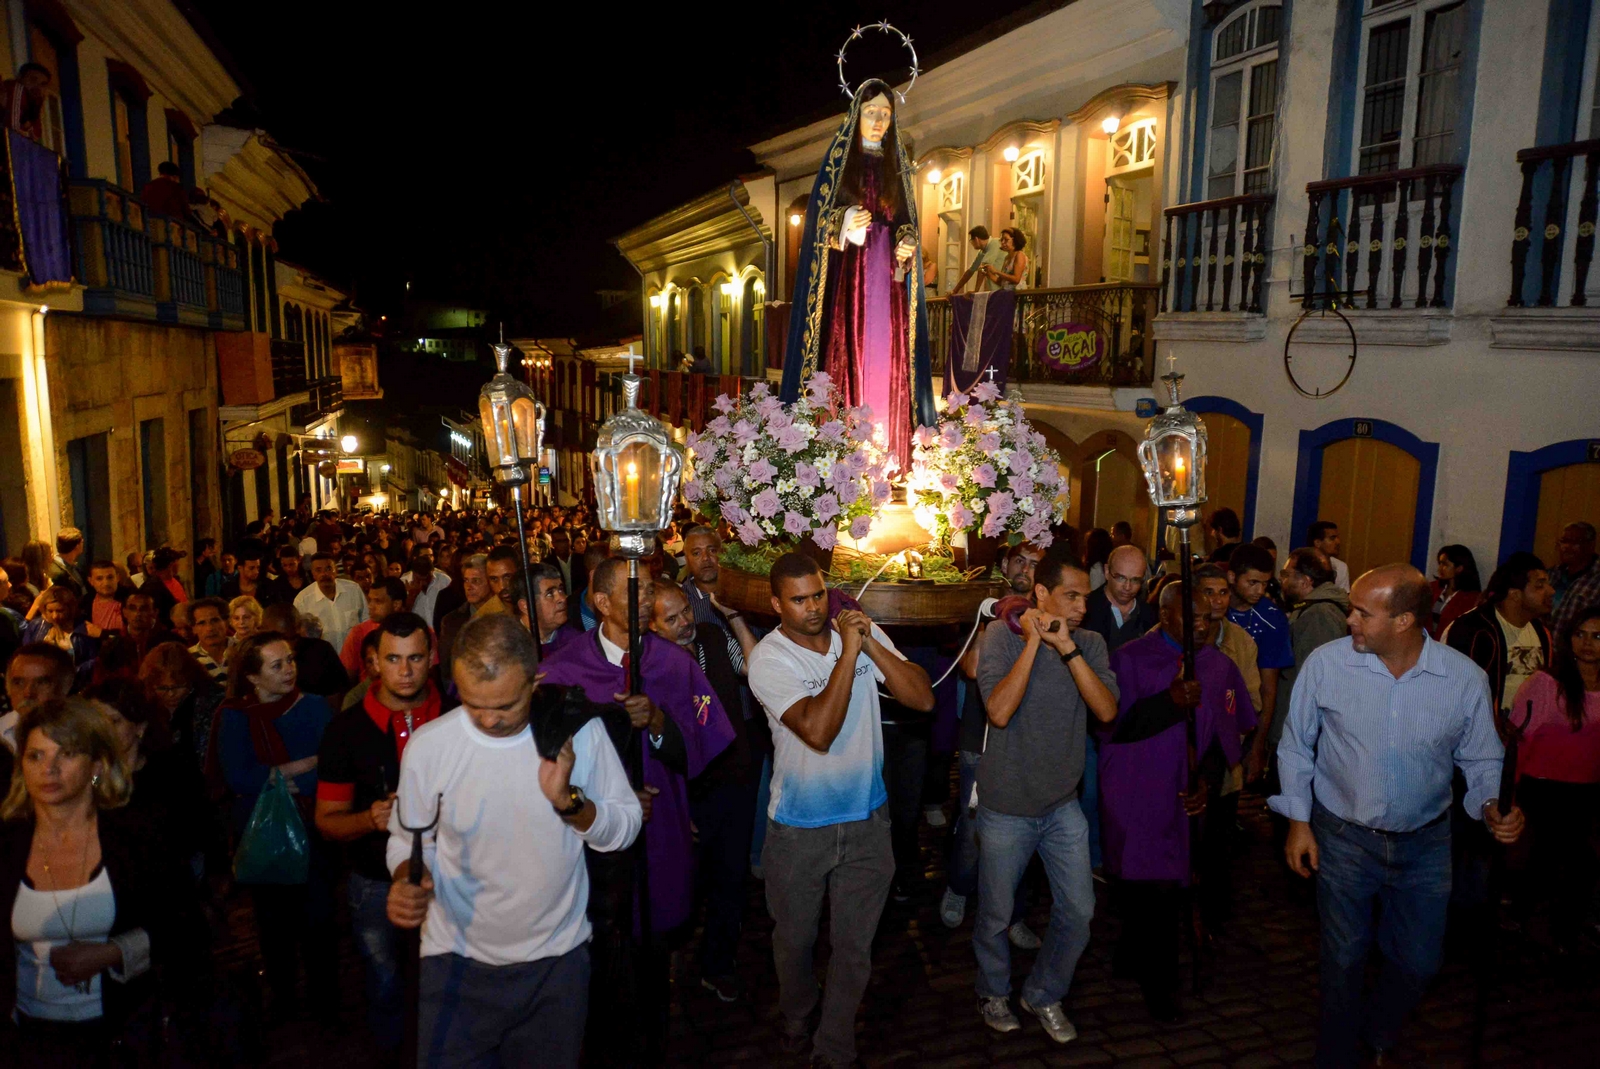 Latinoamérica tiene Eventos y Tradiciones de Semana Santa Espectaculares, míralas aquí